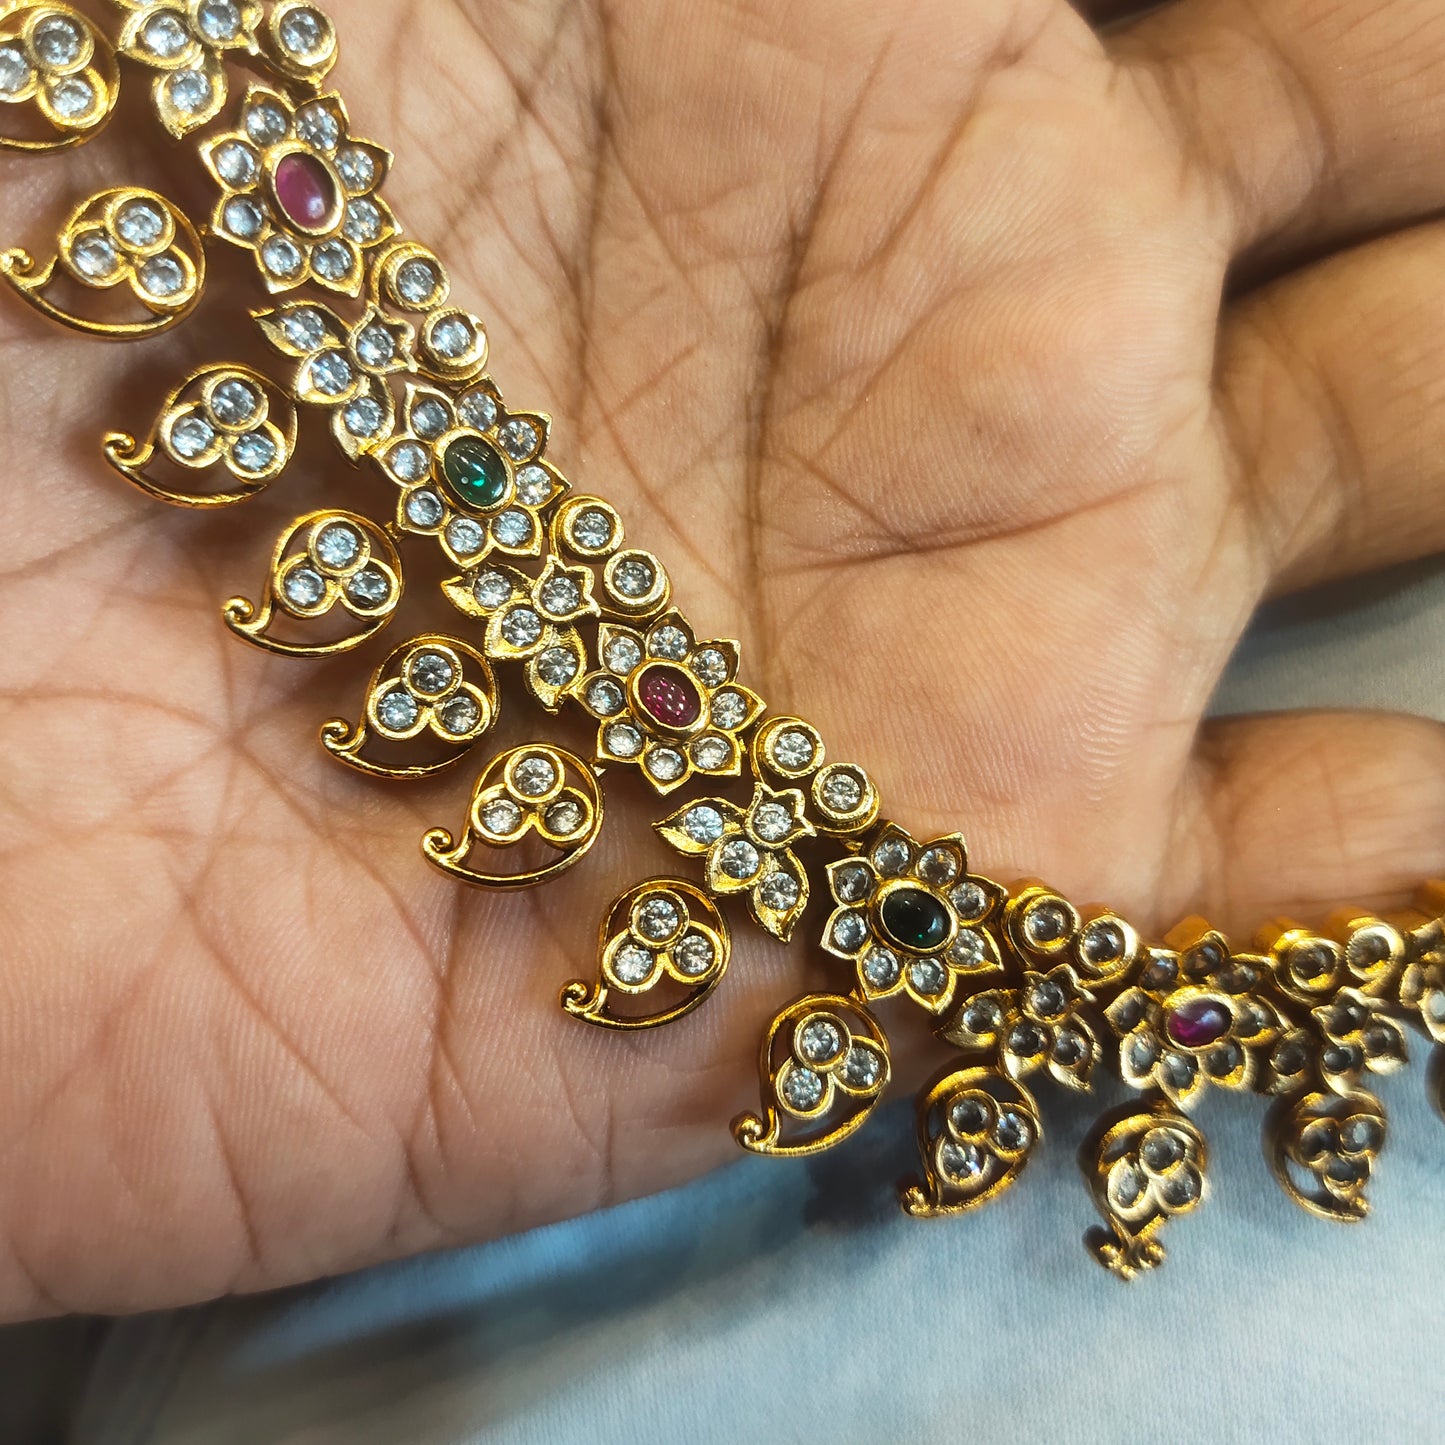 "Effortlessly Elegant: The Asp Fashion Short Antique Necklace Set"